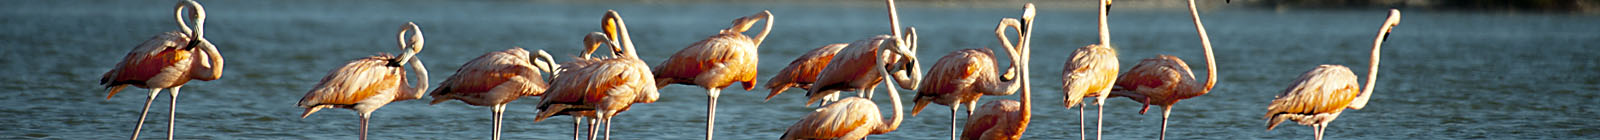 Flamingos Rio Lagartos, Yucatan - Banner